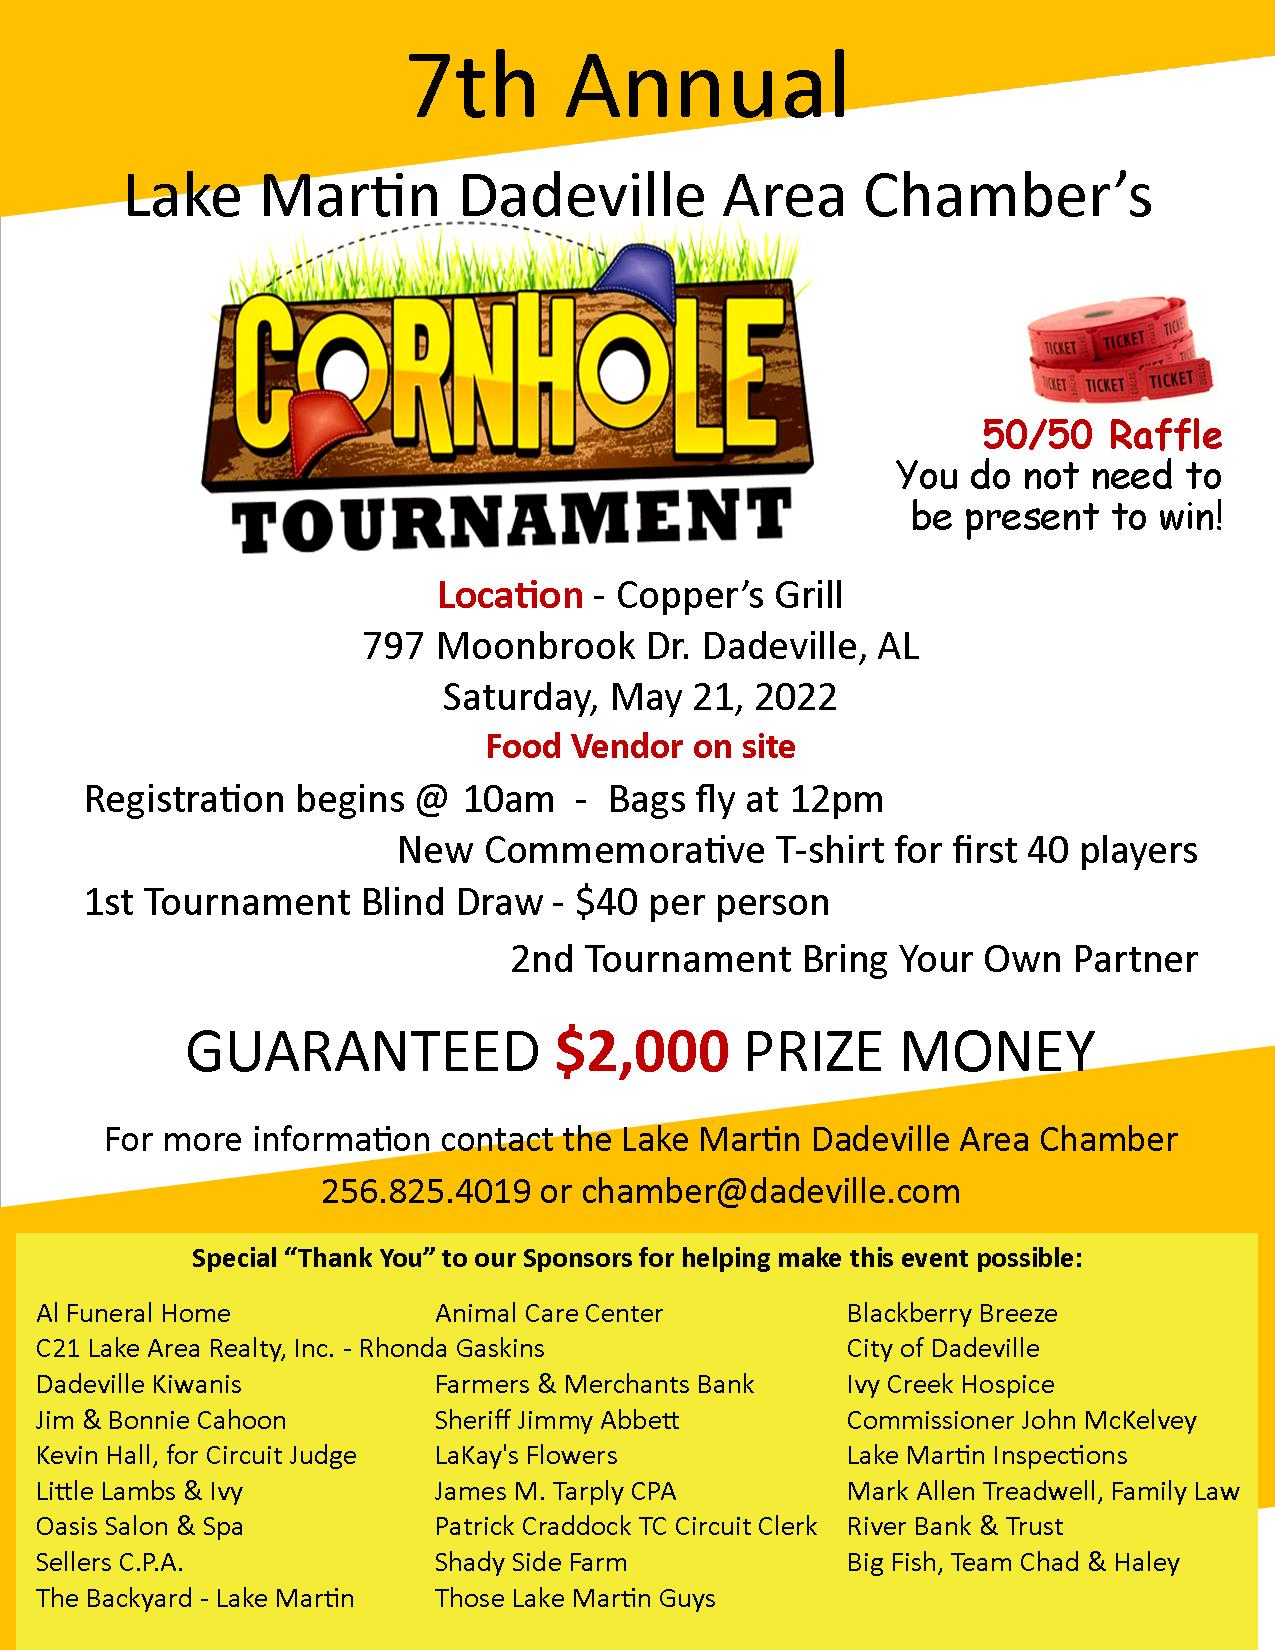 7th Annual Cornhole Tournament